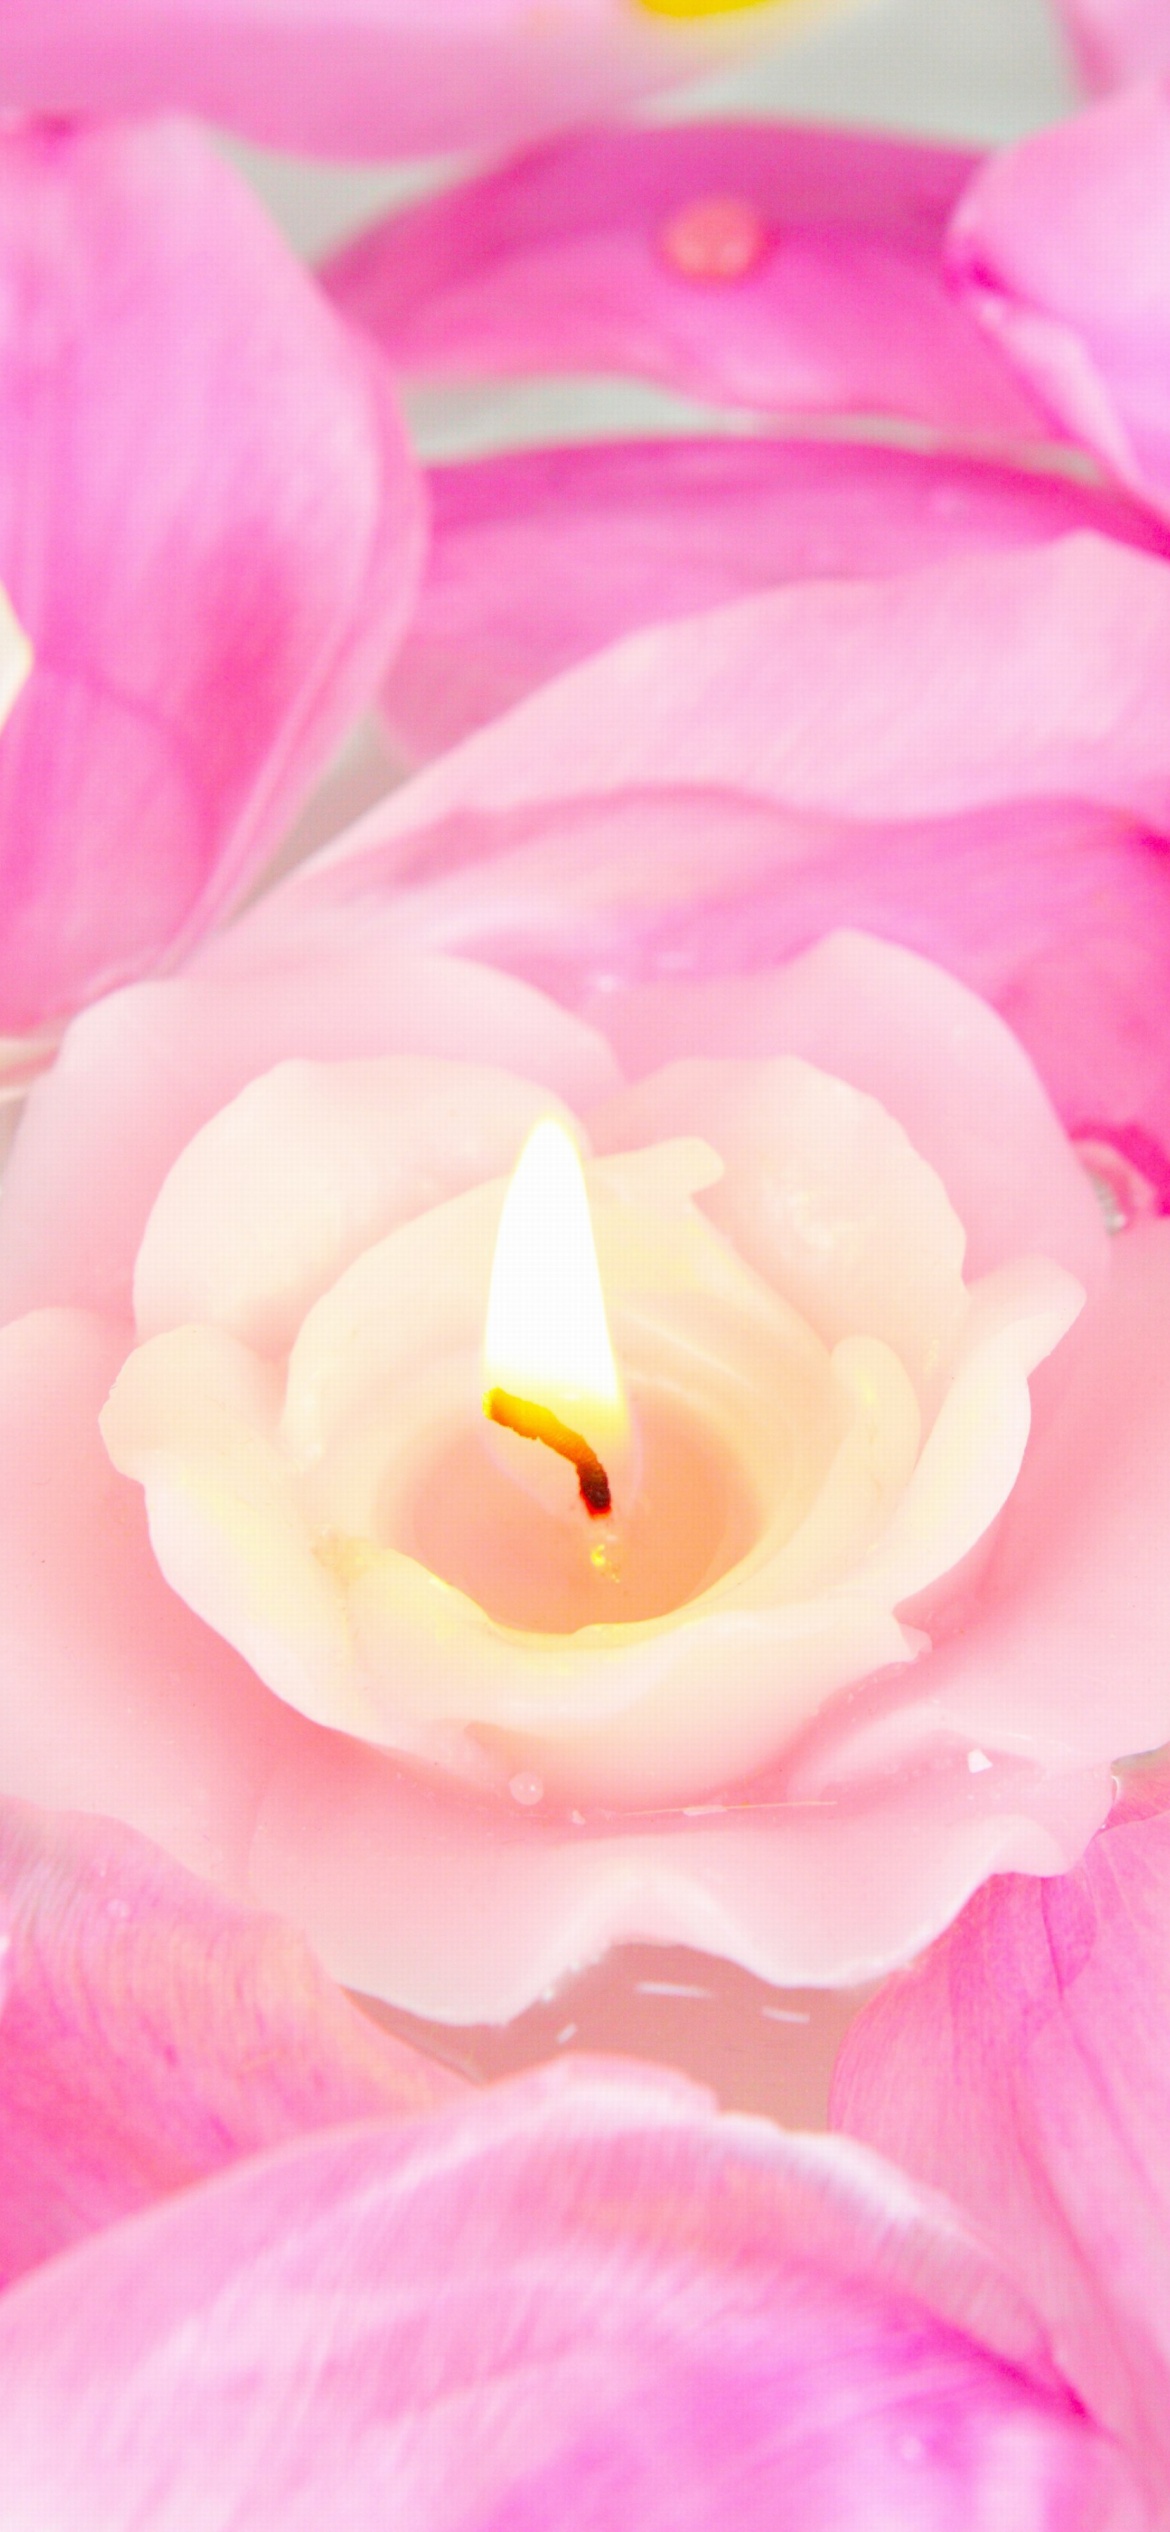 Candle on lotus petals screenshot #1 1170x2532